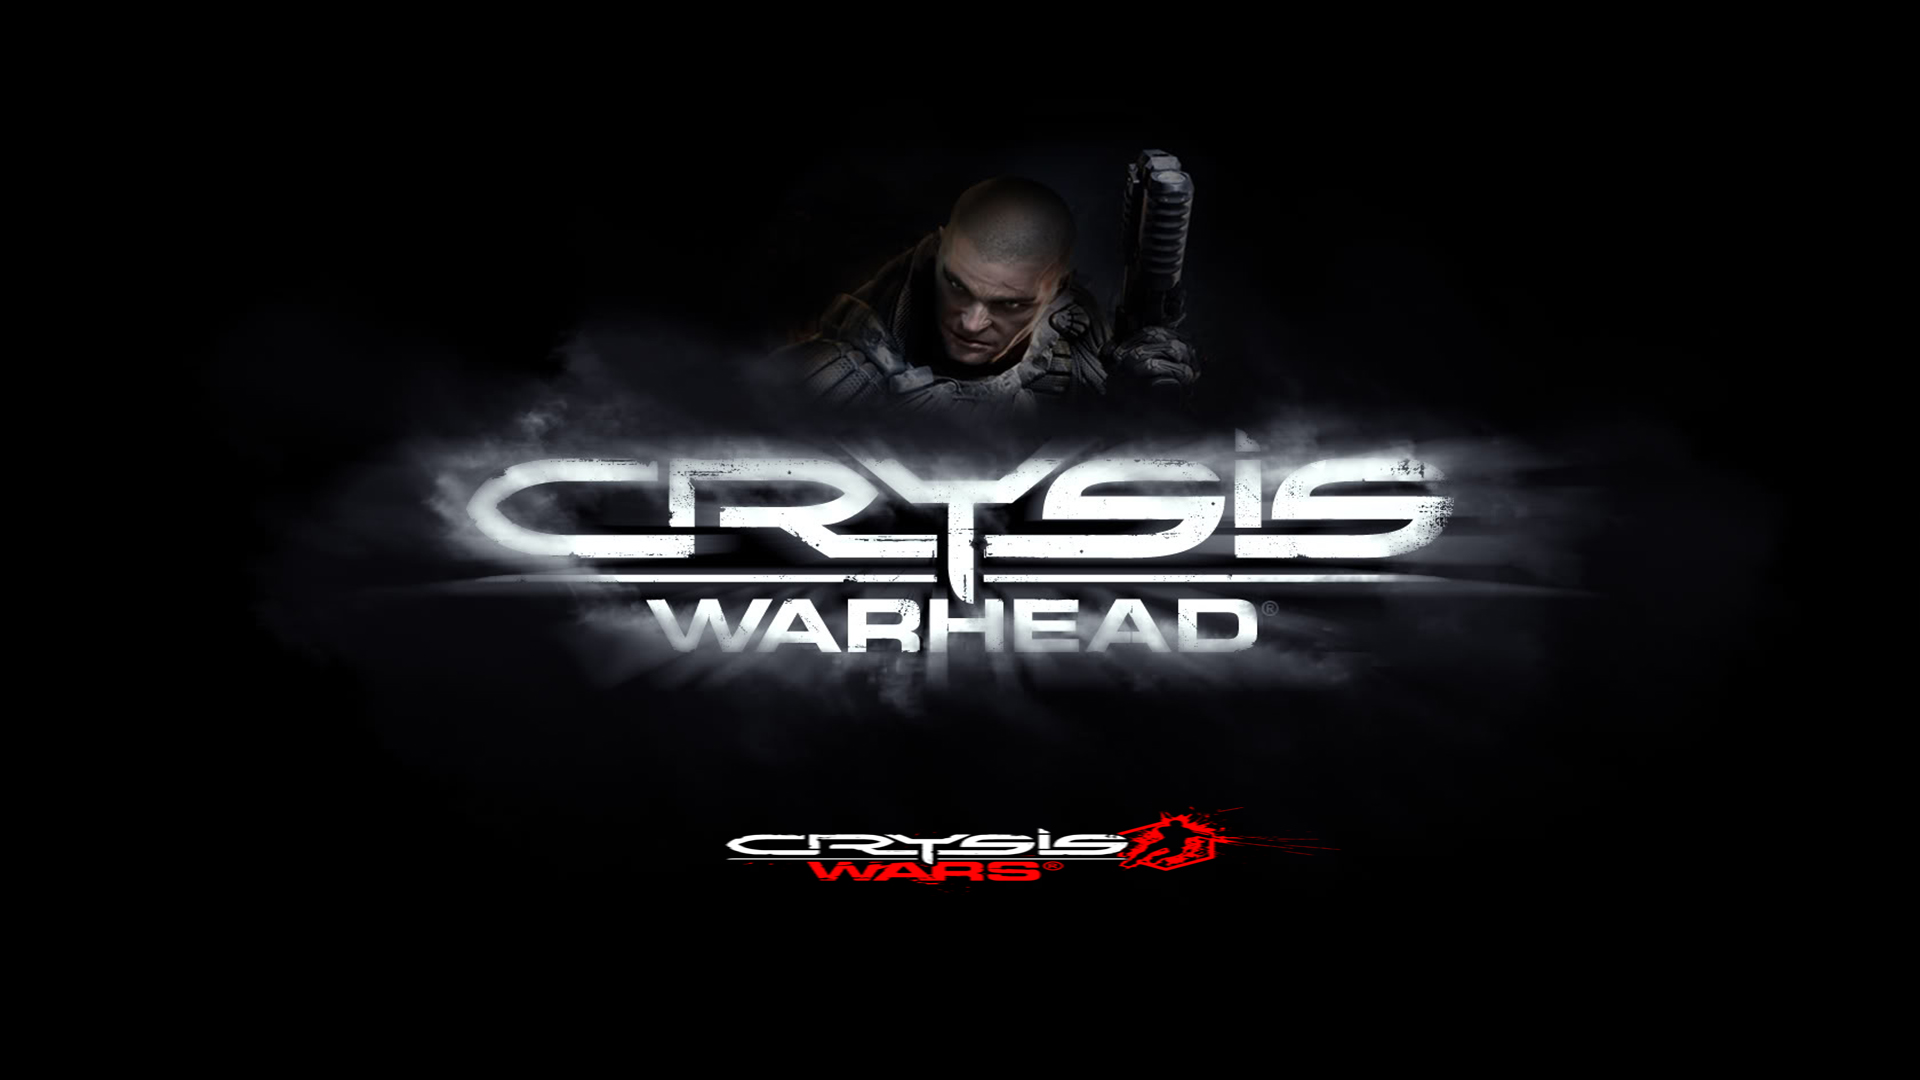 Crysis Wars